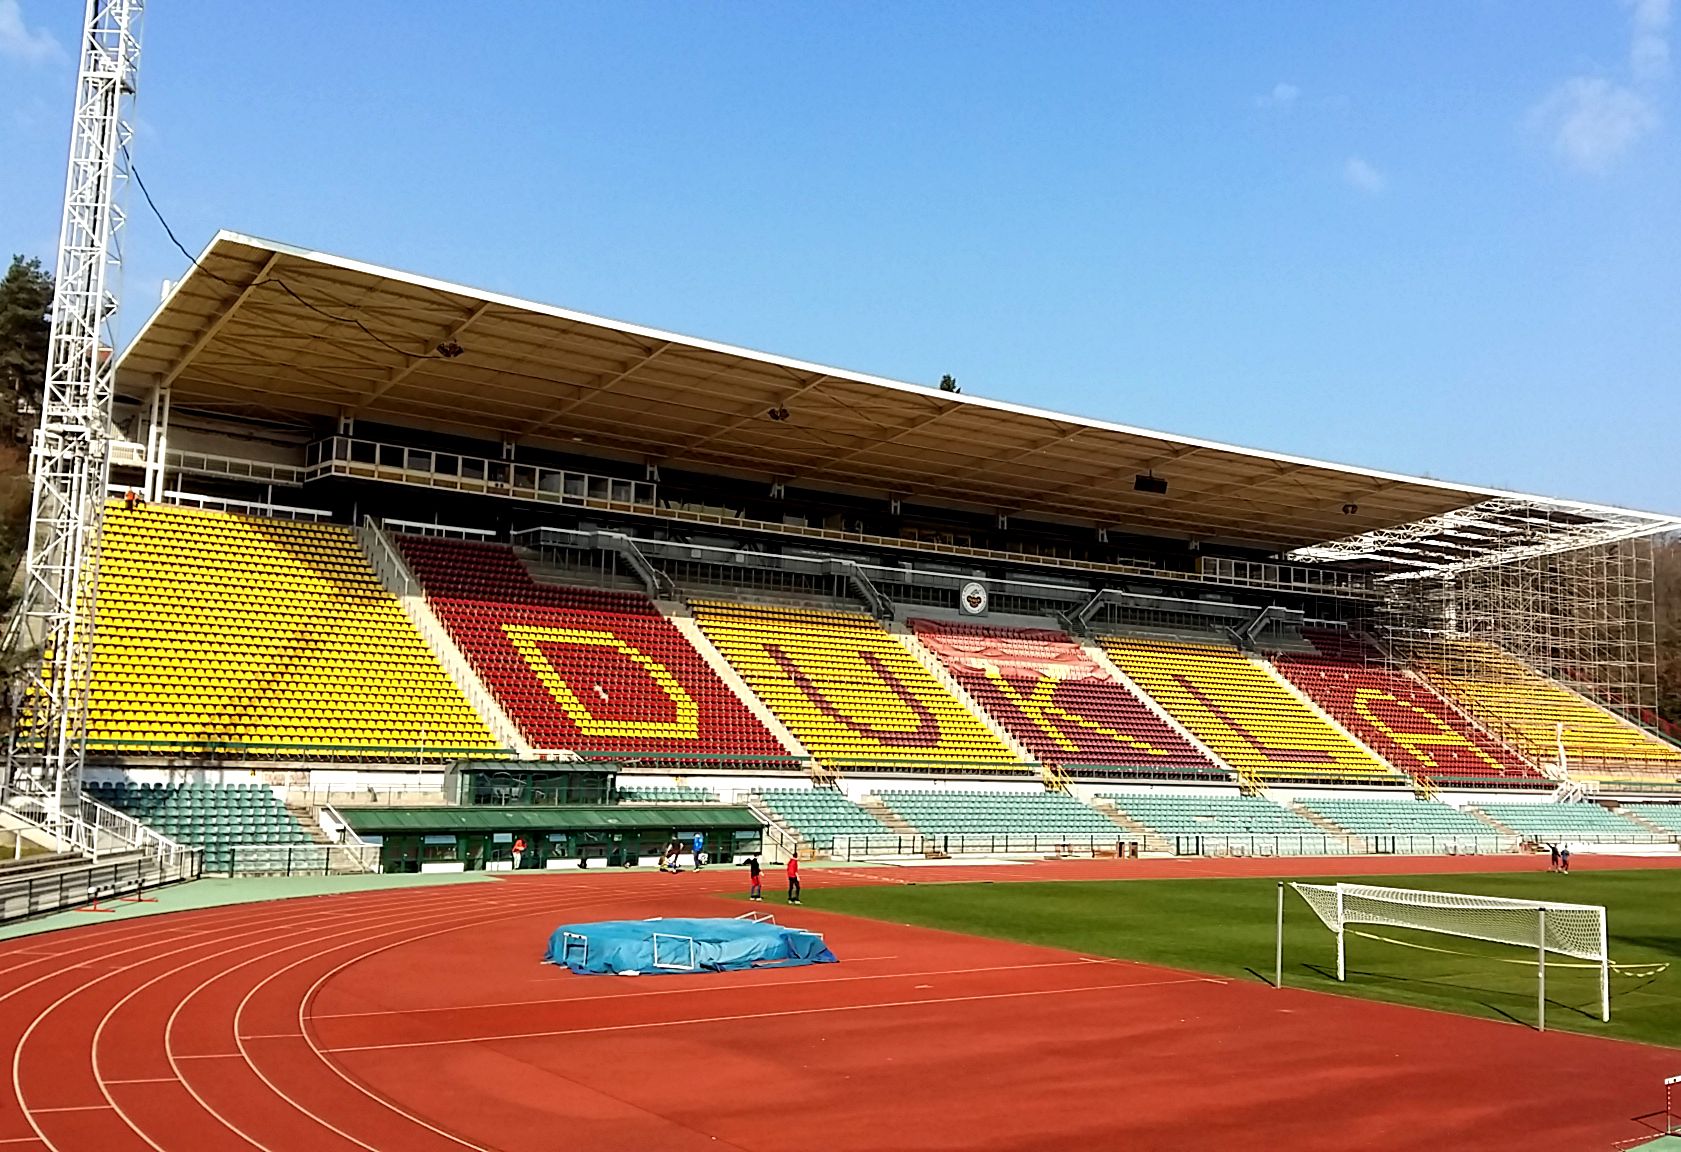 Stadion Juliska rekonstrukce tribuny - Bouw